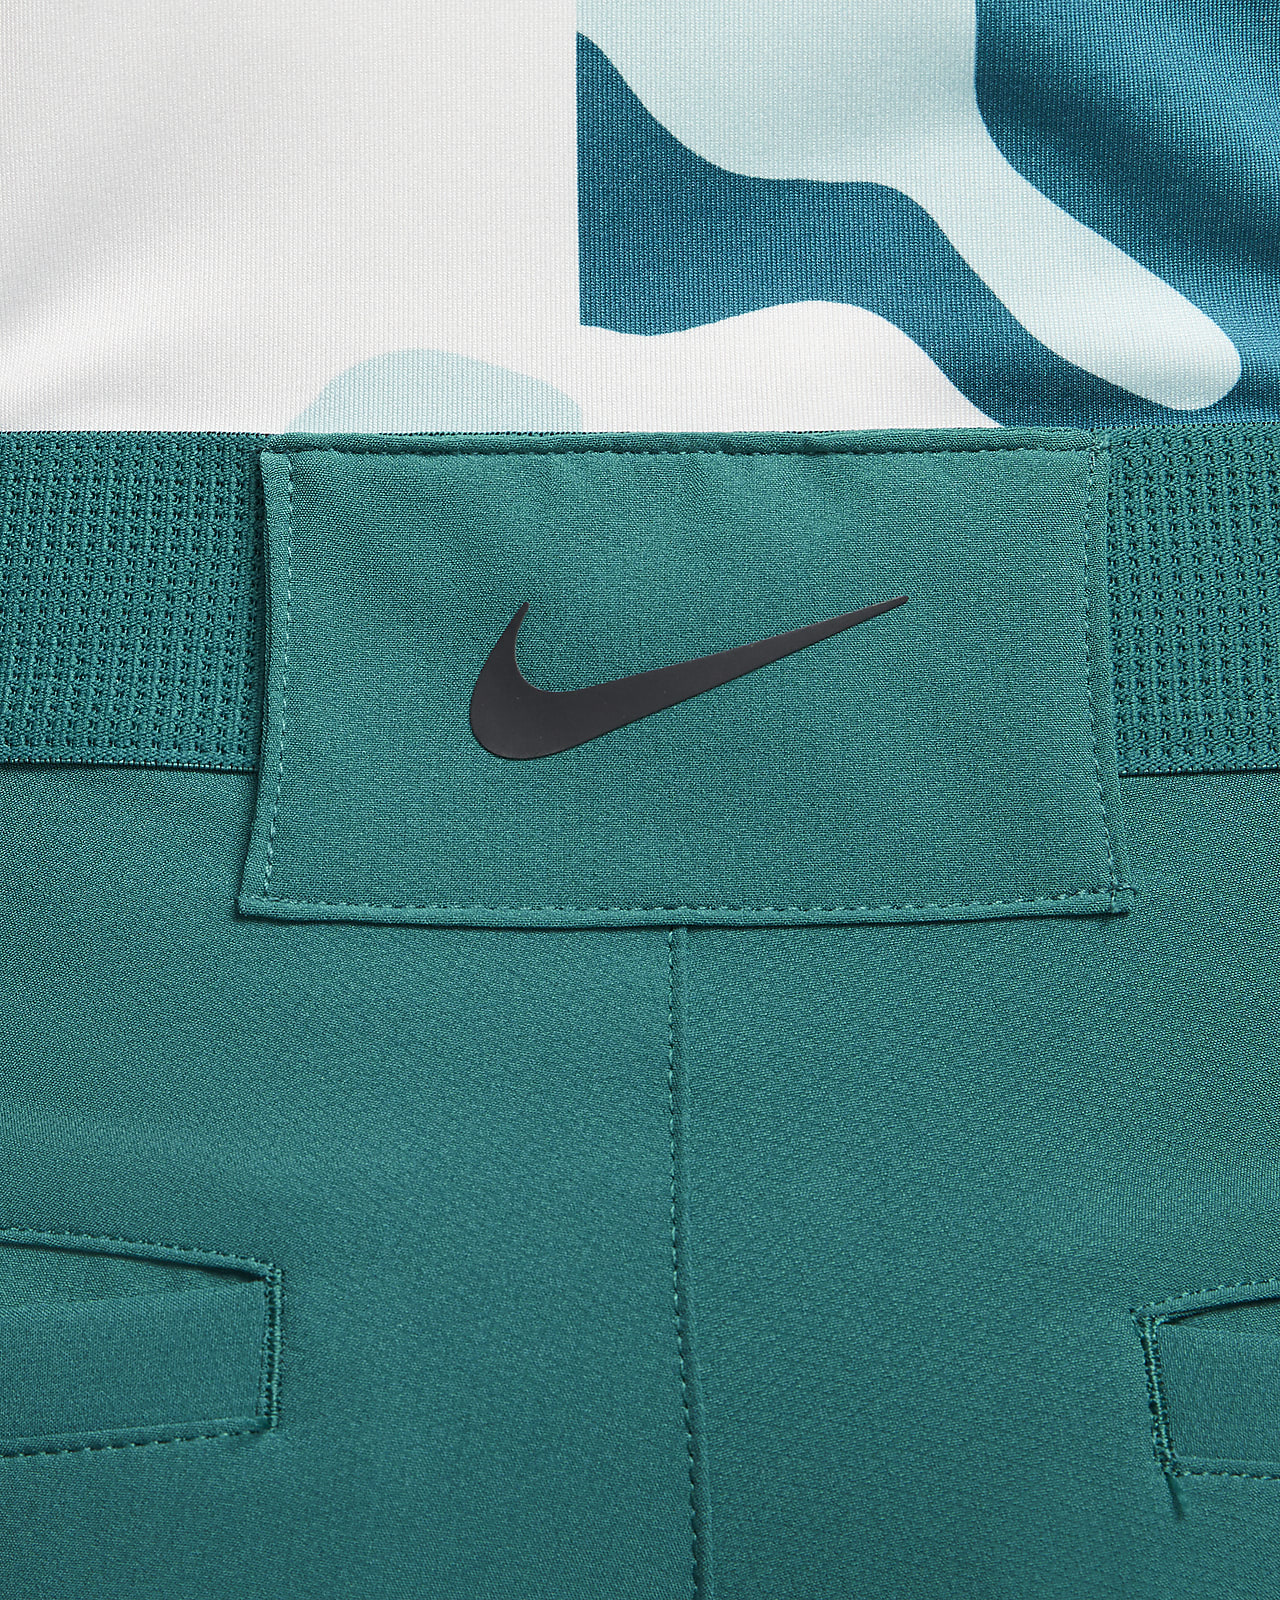 Nike Dri-FIT Vapor-golfbukser slank pasform til mænd. Nike DK